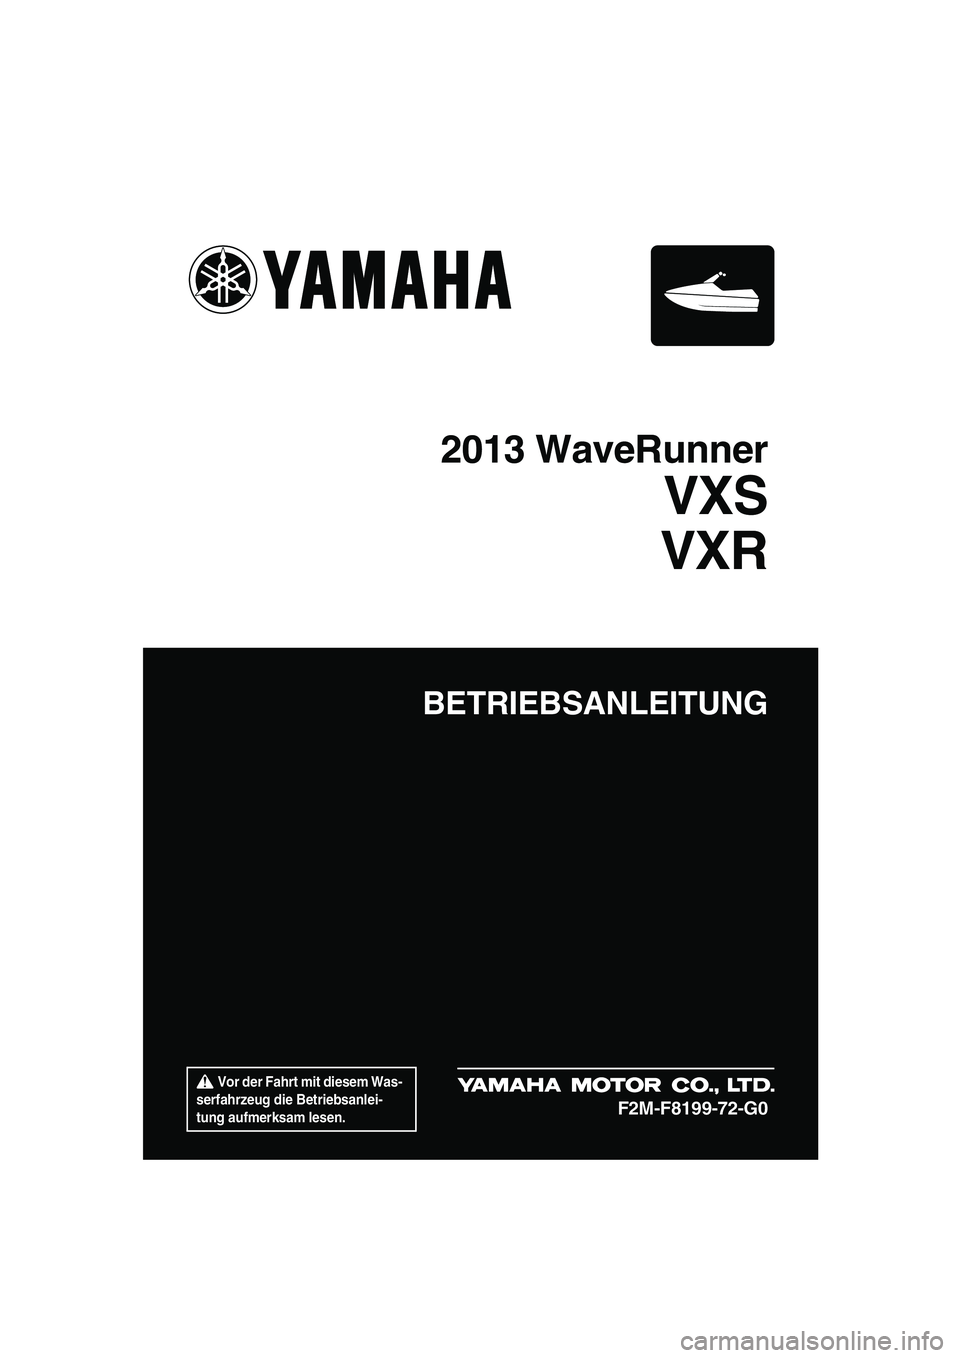 YAMAHA VXS 2013  Betriebsanleitungen (in German)  Vor der Fahrt mit diesem Was-
serfahrzeug die Betriebsanlei-
tung aufmerksam lesen.
BETRIEBSANLEITUNG
2013 WaveRunner
VXS
VXR
F2M-F8199-72-G0
UF2M72G0.book  Page 1  Thursday, July 5, 2012  3:45 PM 